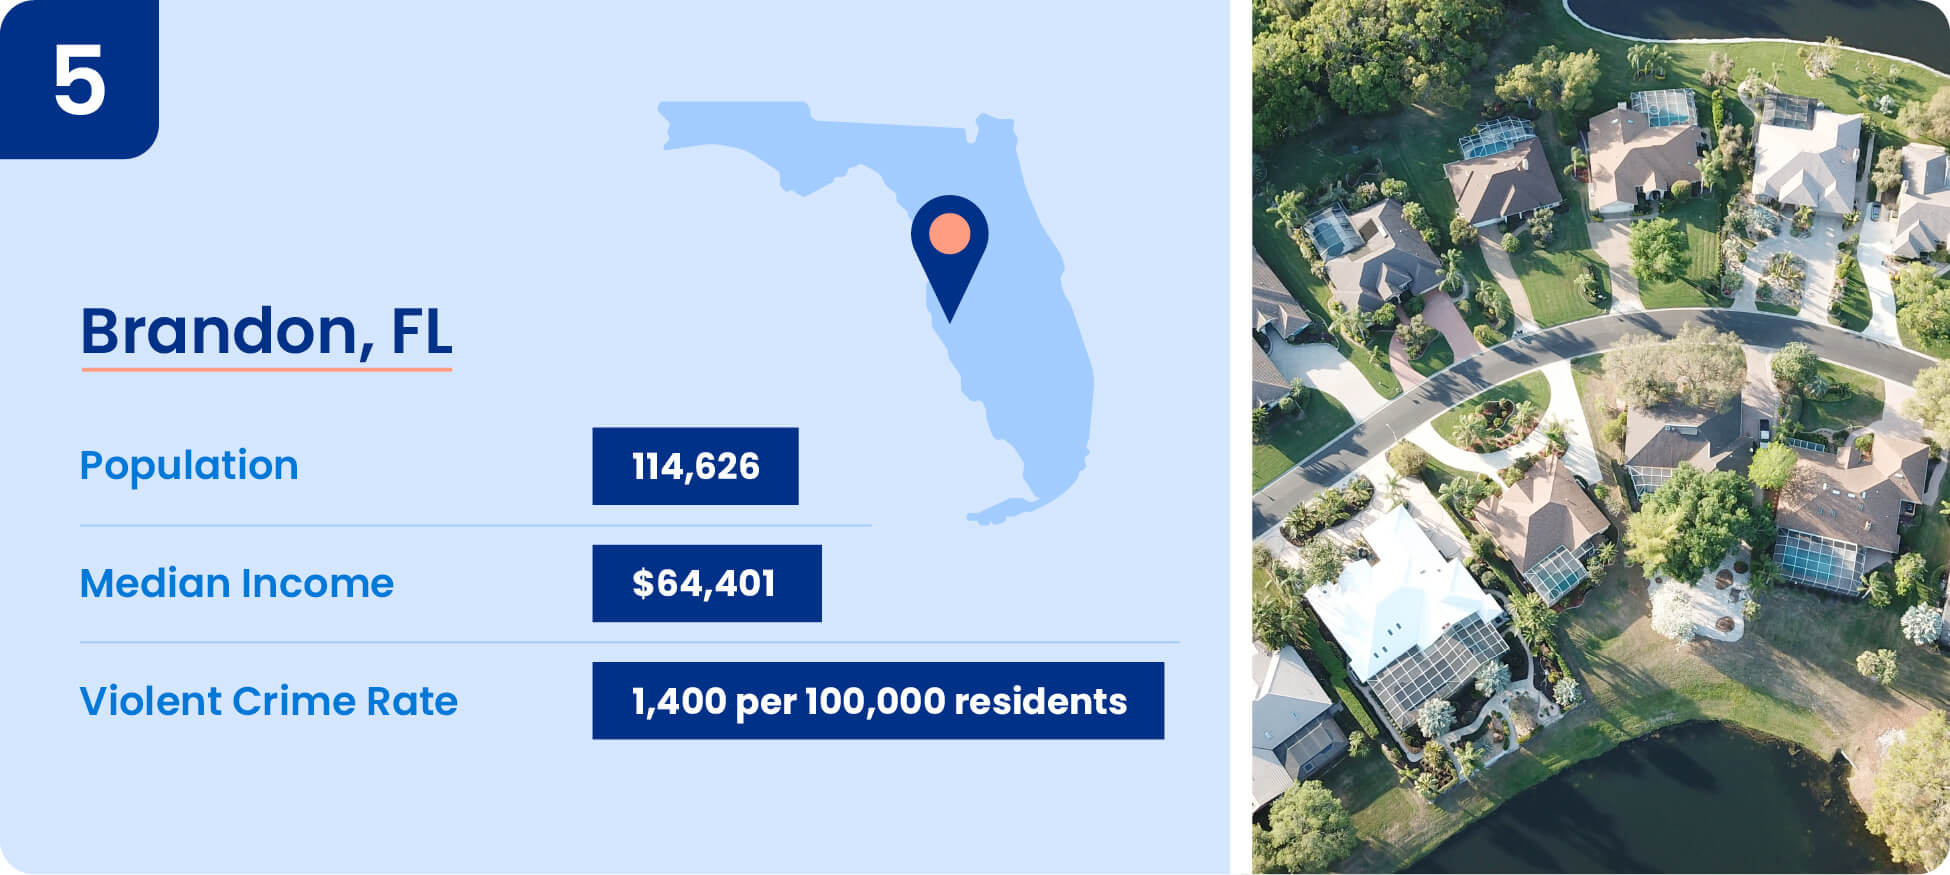 Image shows safety data including median income, population, and violent crime rate for Brandon, Florida.